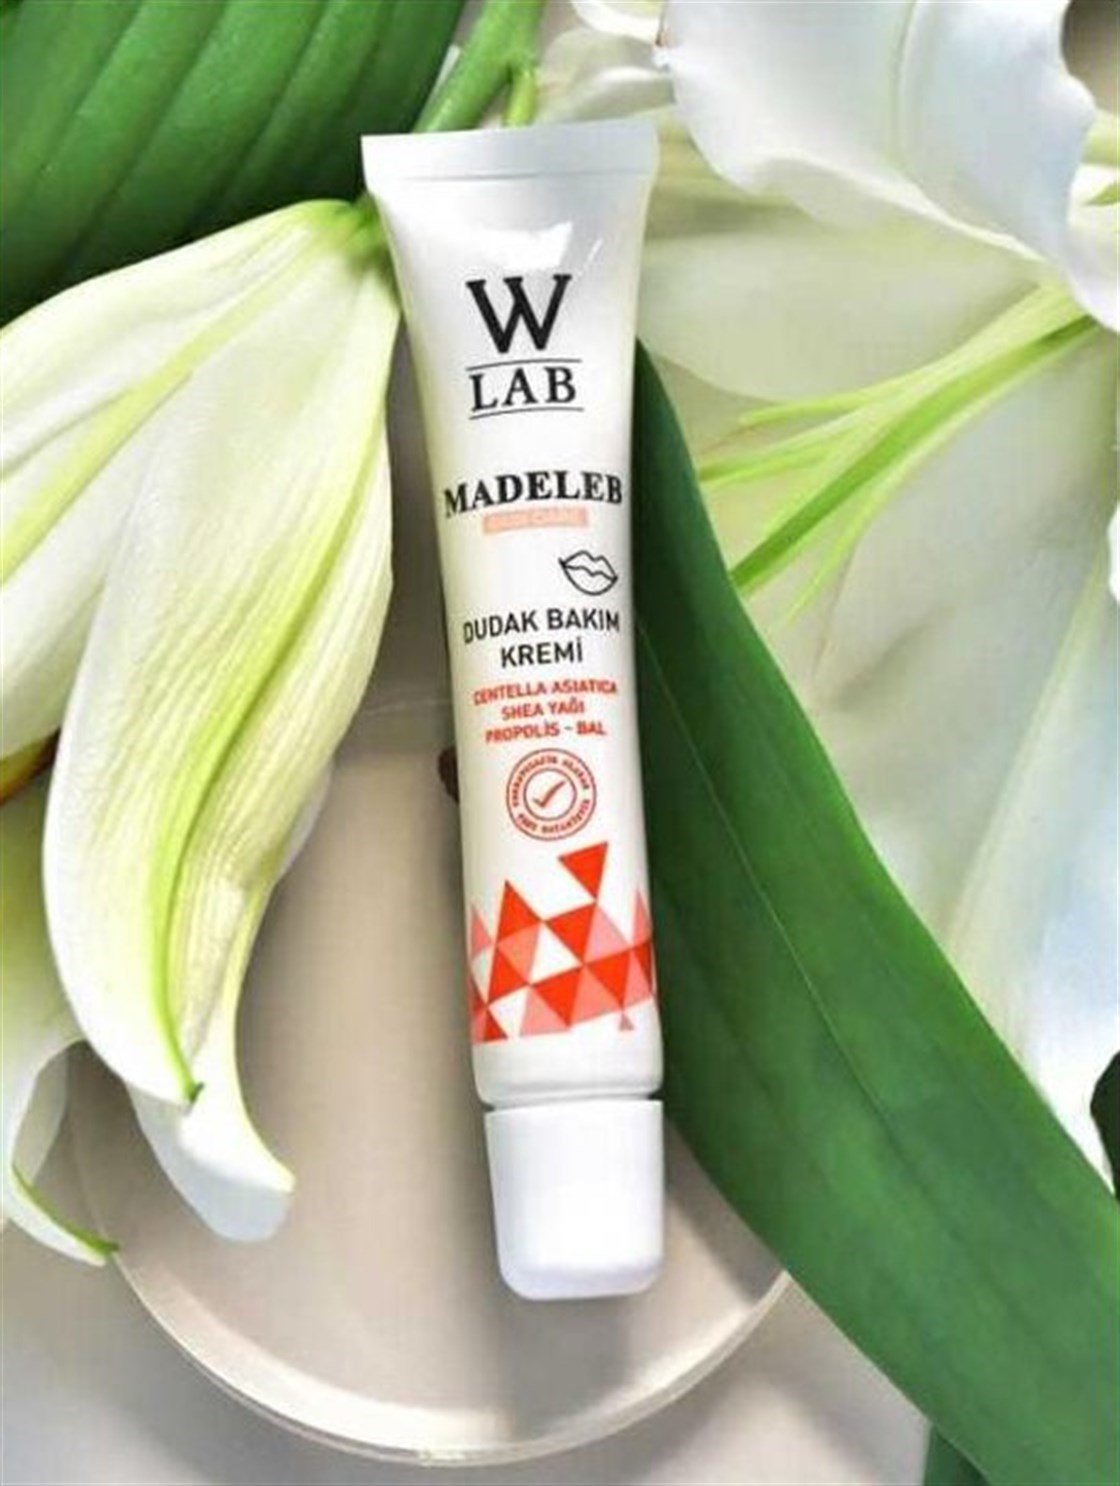 W-Lab Kozmetik W-lab Madeleb Dudak Bakım Kremi Fiyatları İndirimli |  Dermoailem.com